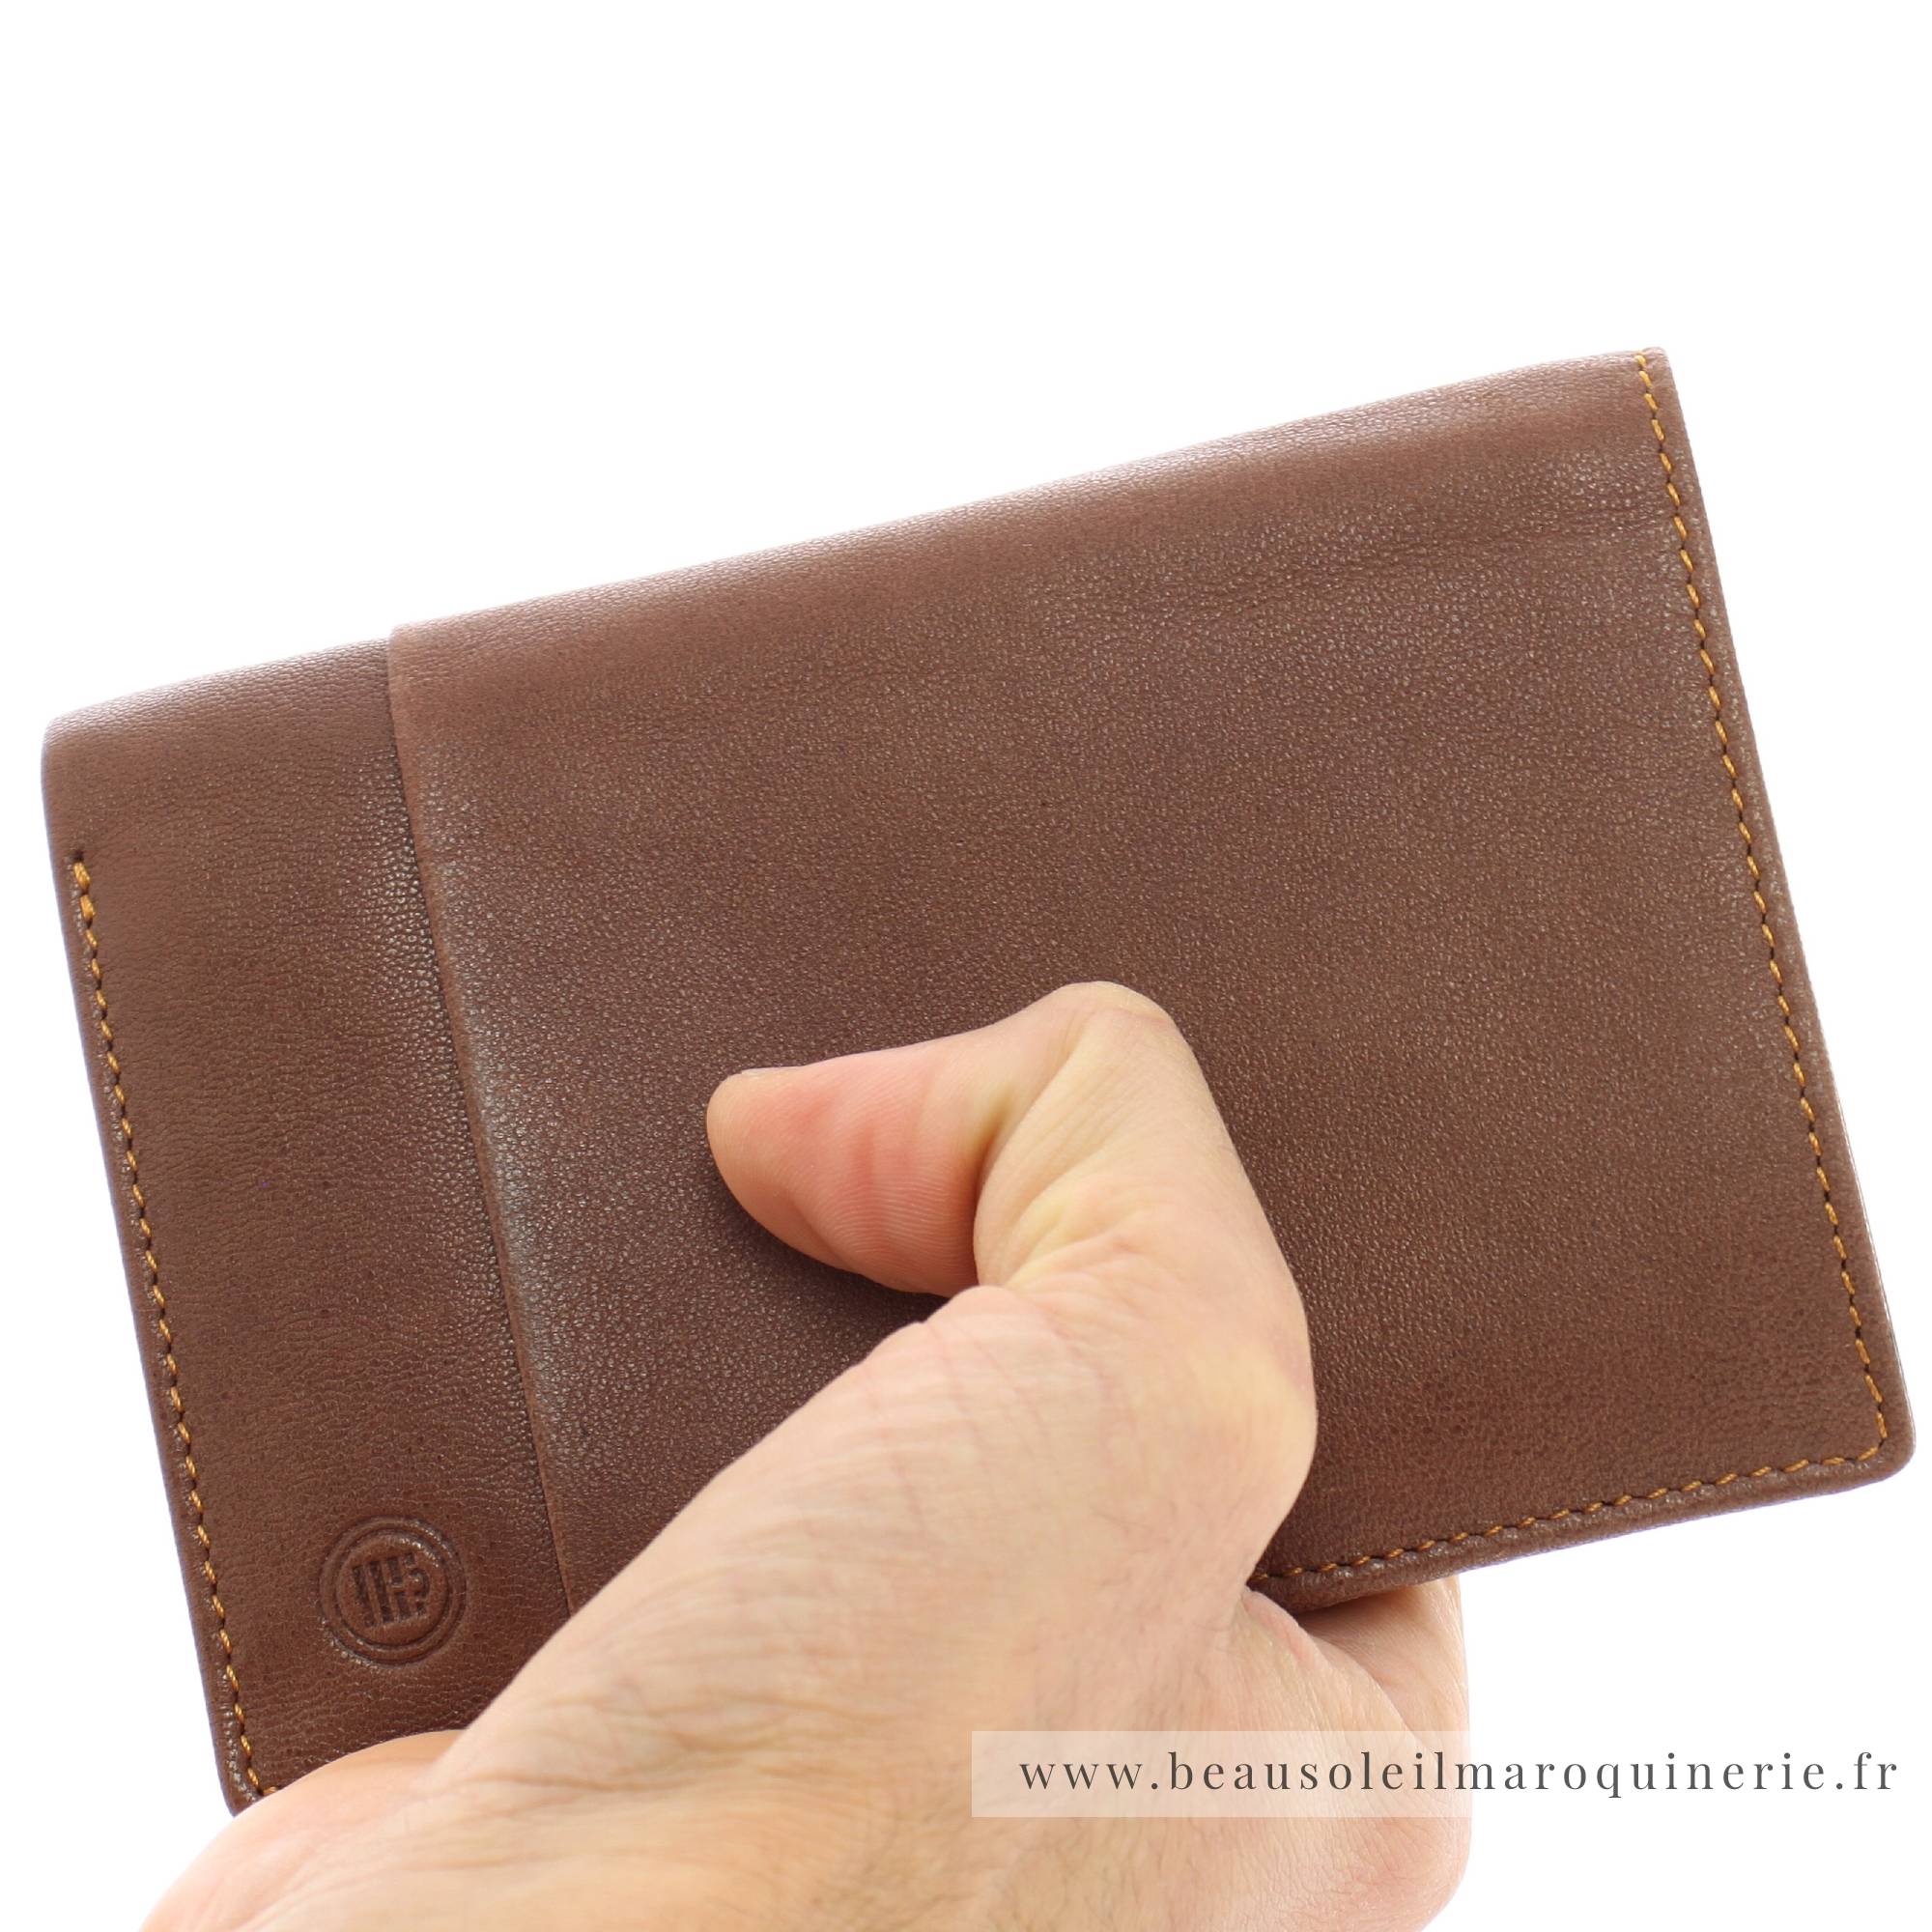 Portefeuille porte-cartes Serge Blanco en cuir ligne Anchorage, référence ANC21019 149 cognac porté main